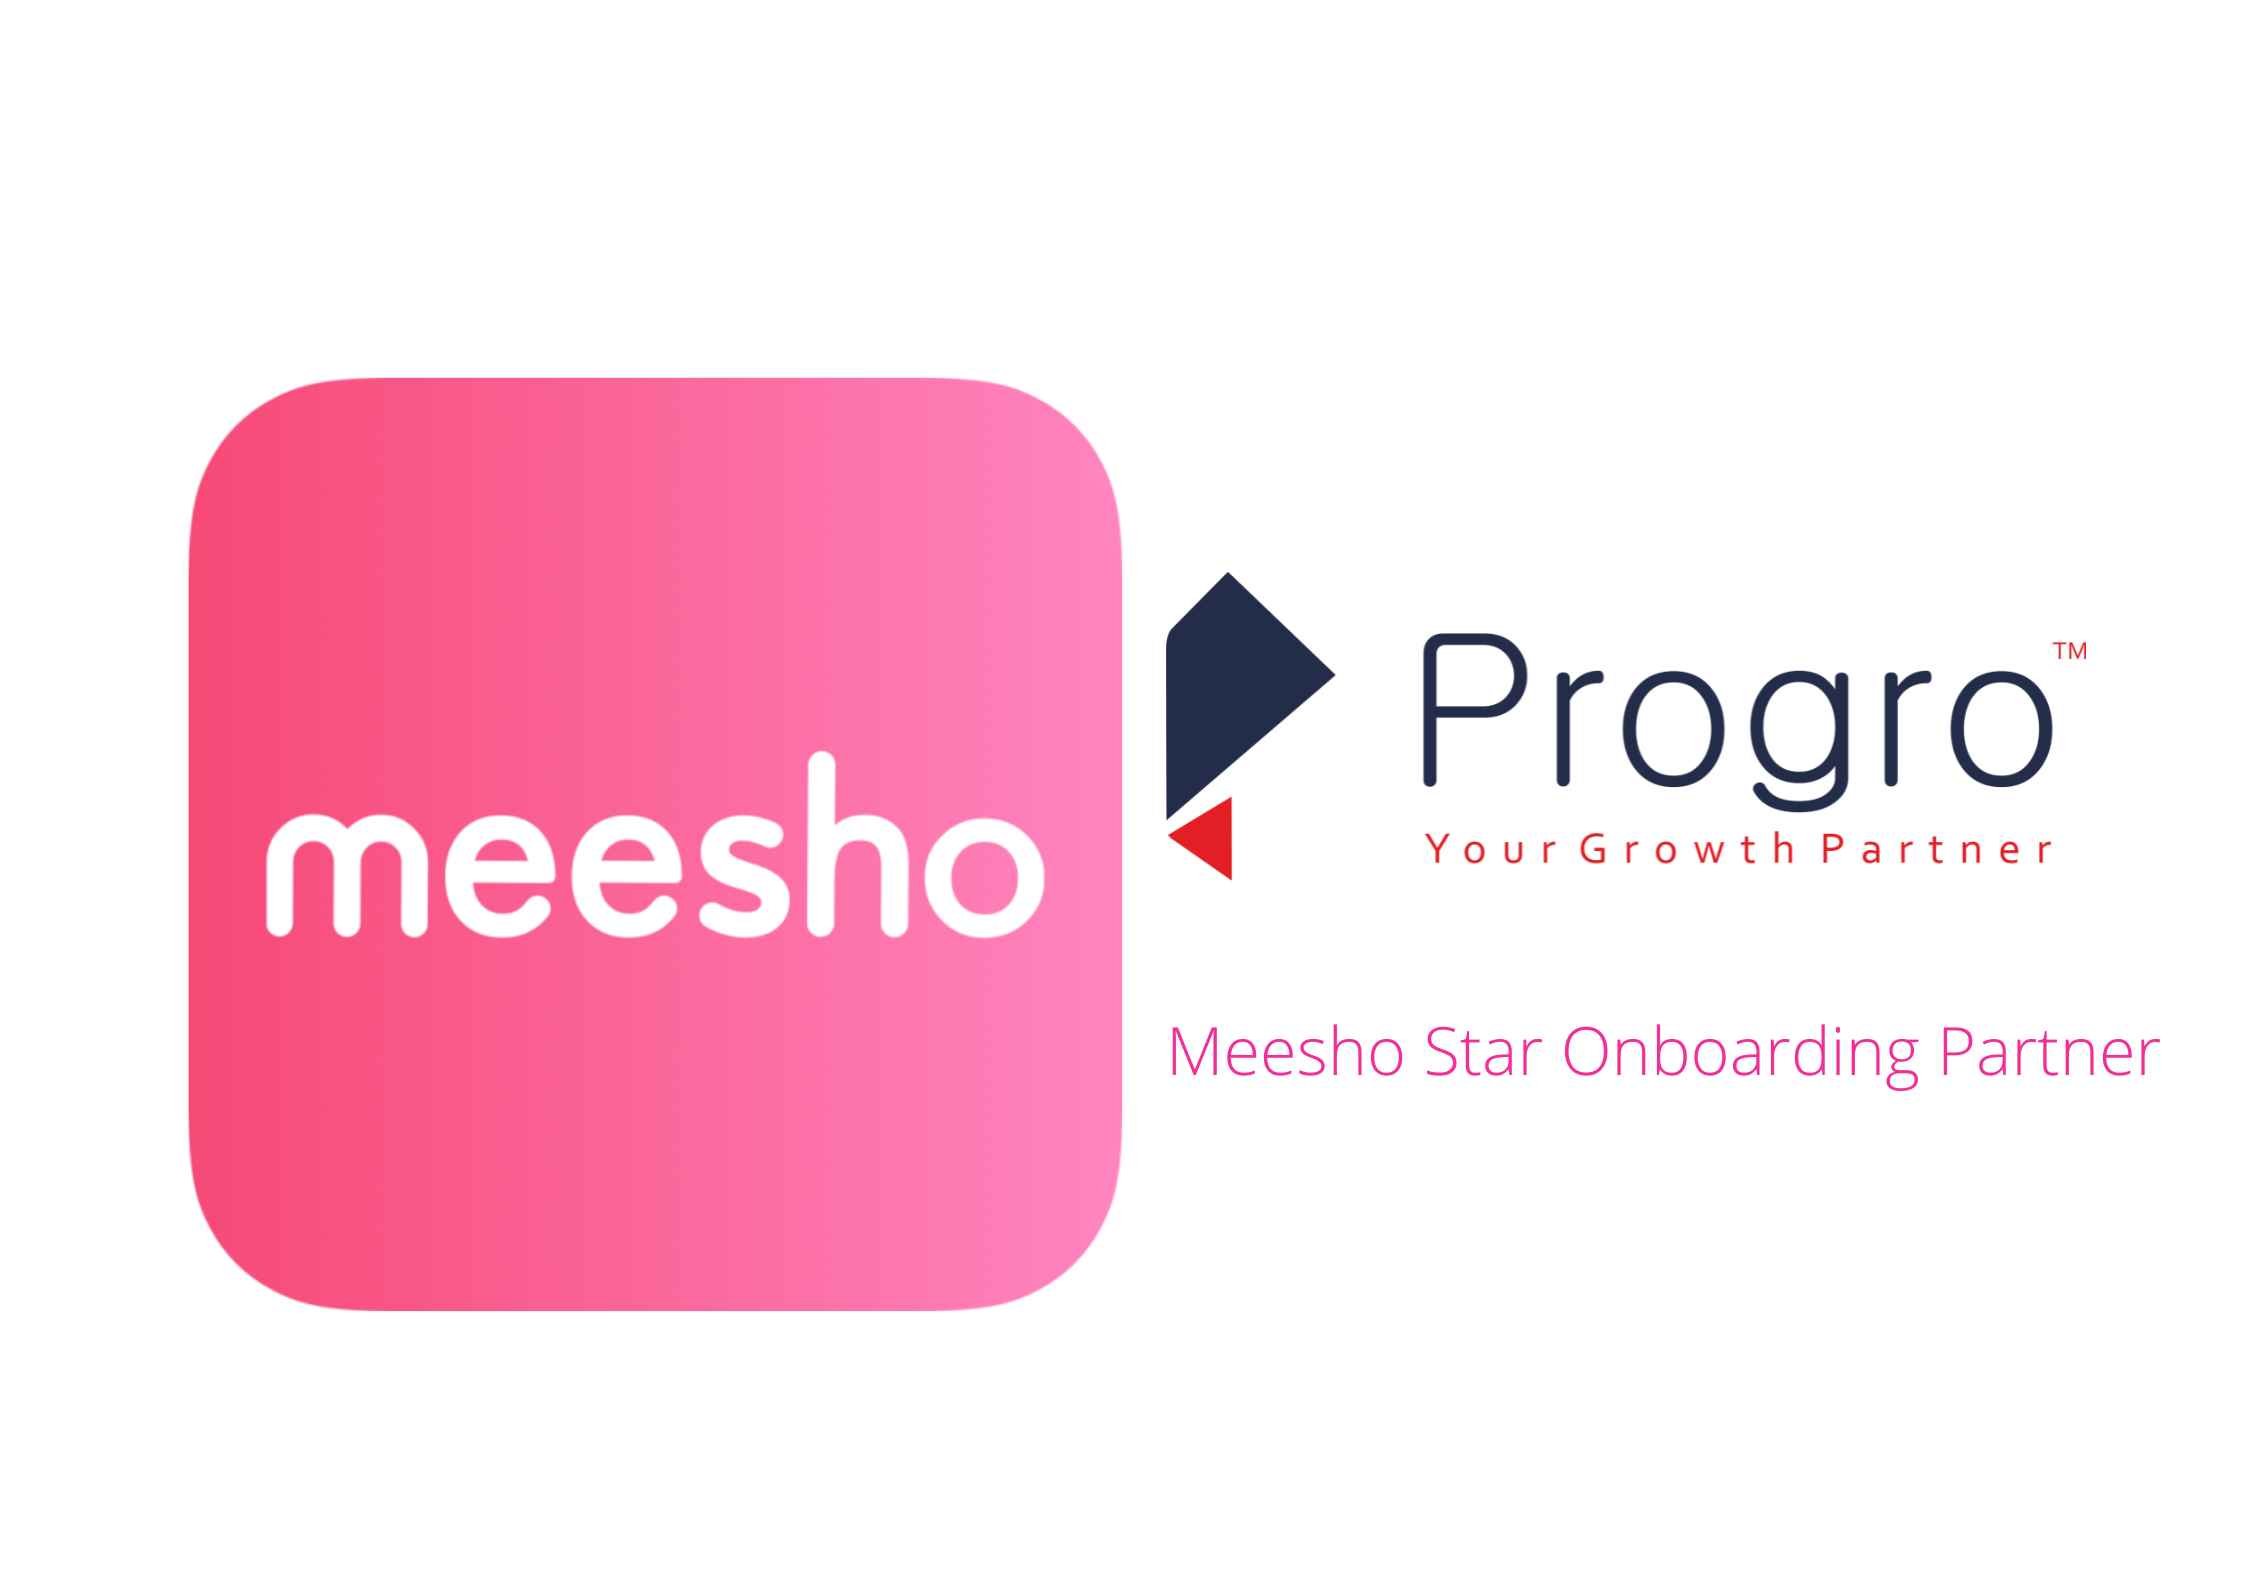 Progro Meesho Star Onboarding Partner